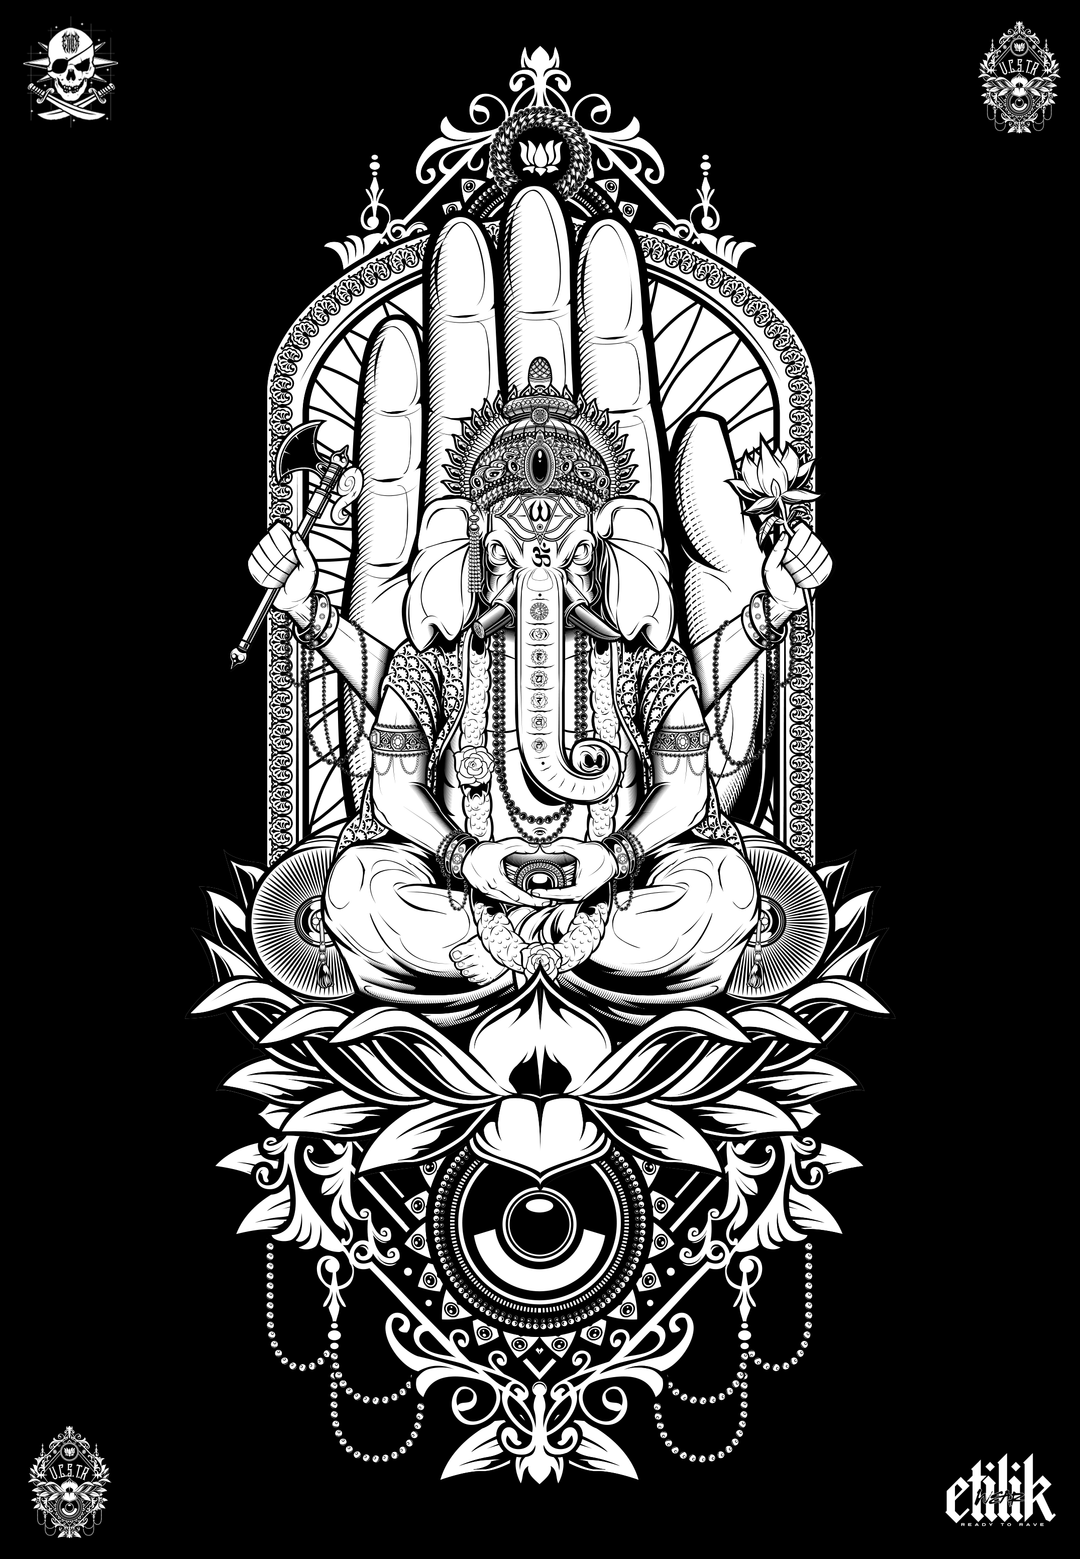 UCSTR - Ganesh - T-shirt - Etilik Wear 